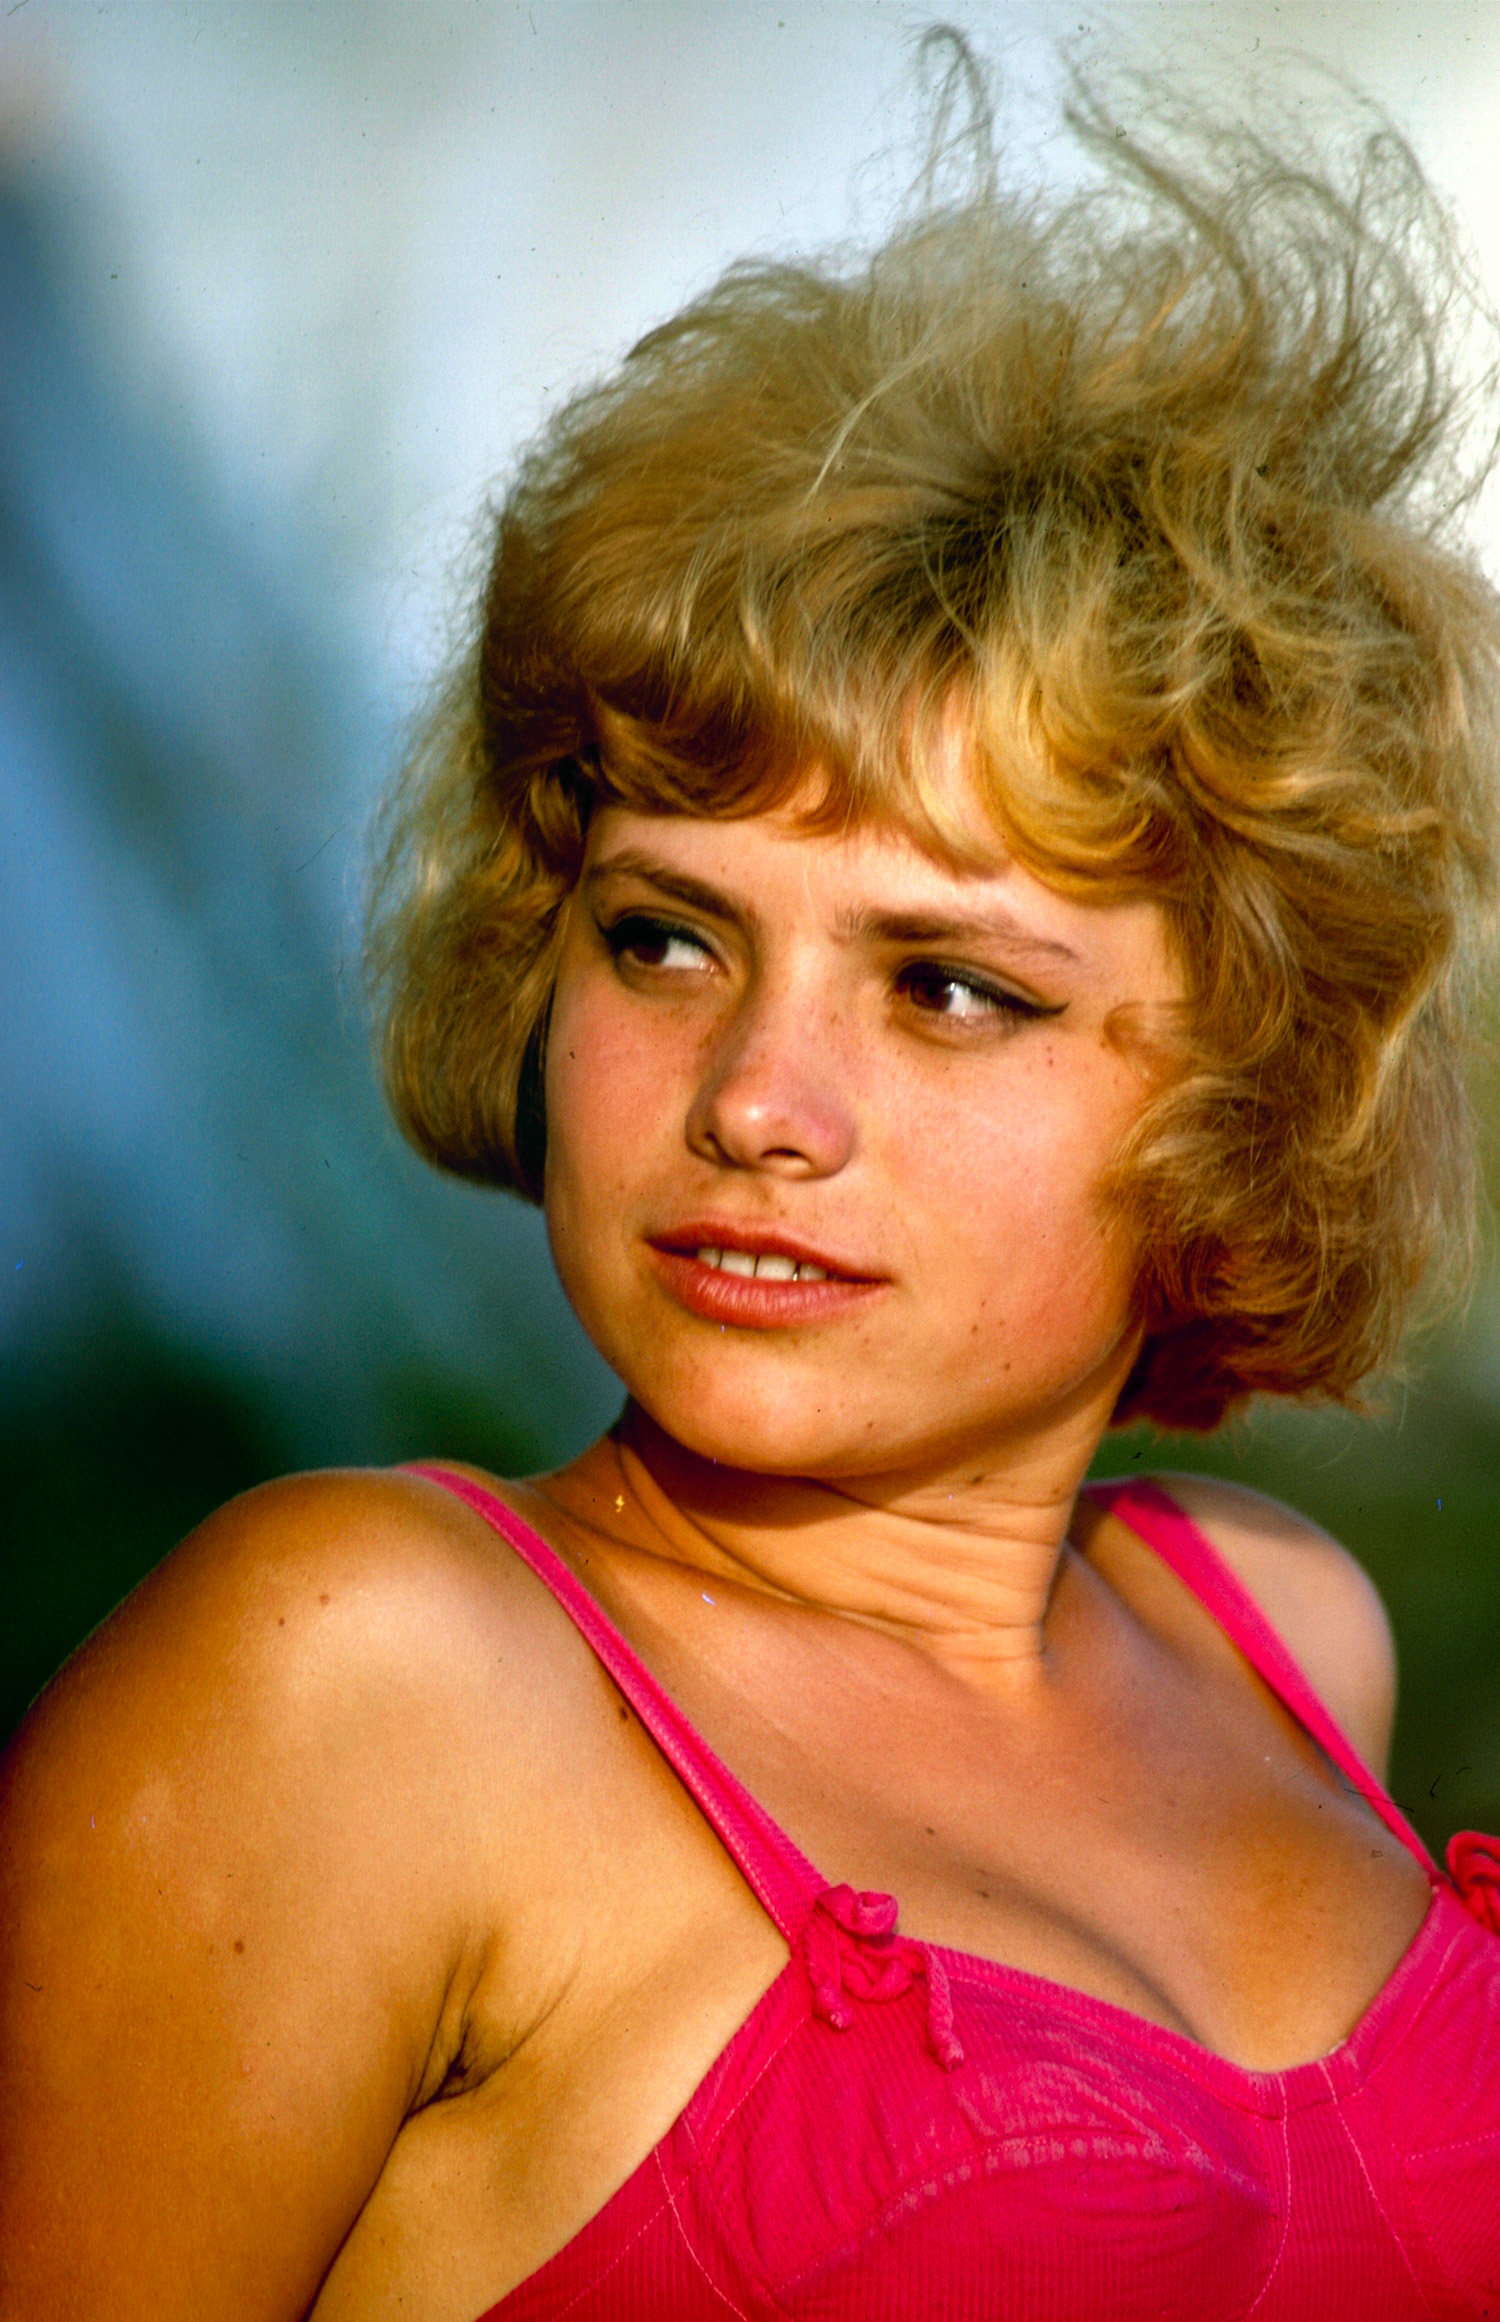 Soviet youth photo essay 1967